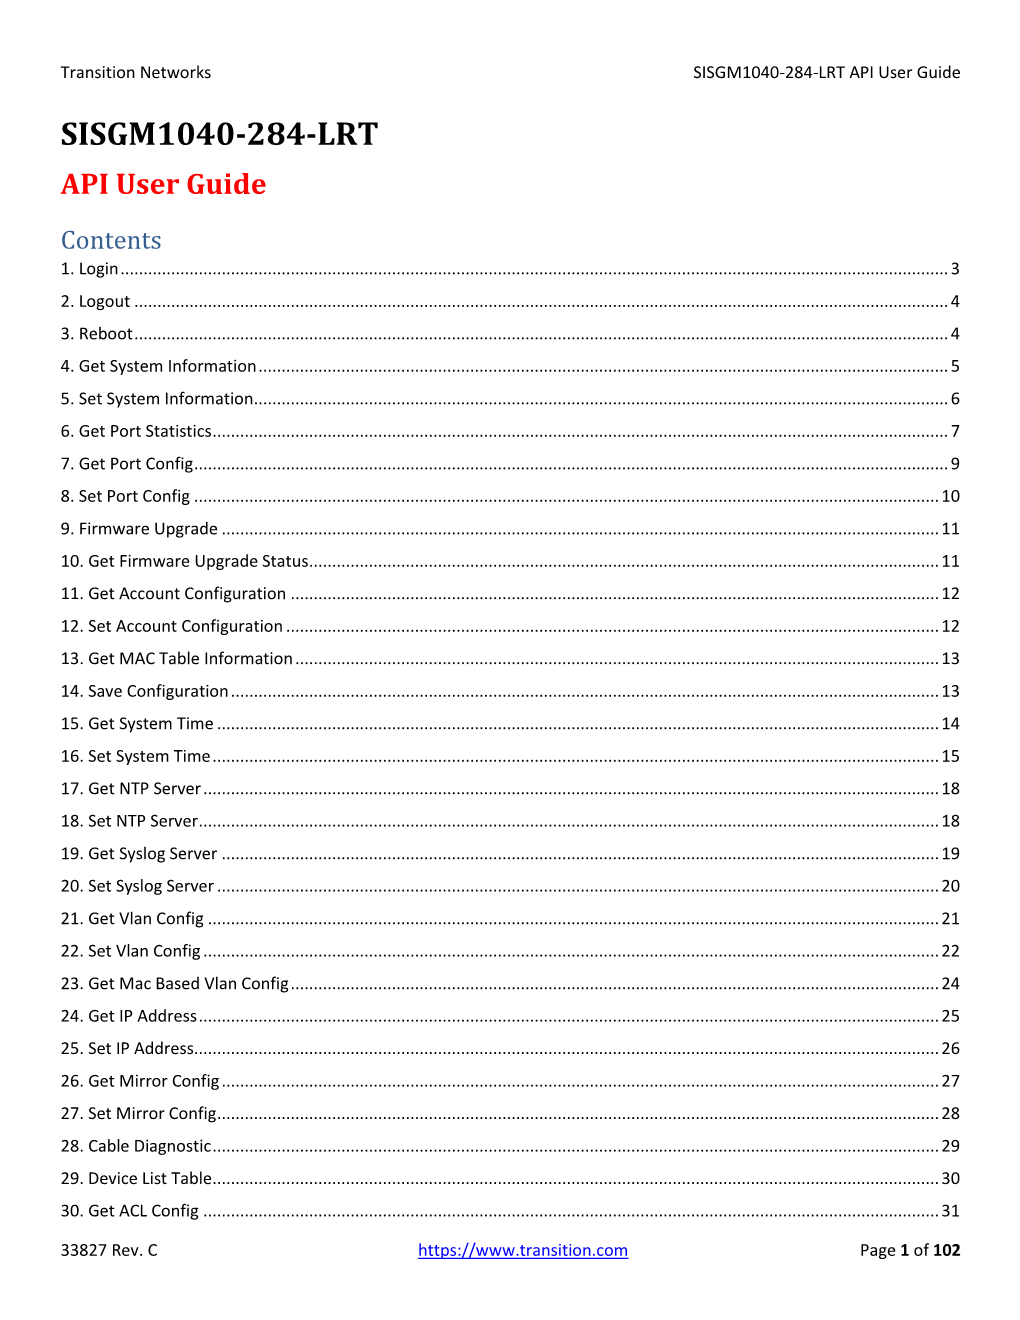 SISGM1040-284-LRT API User Guide